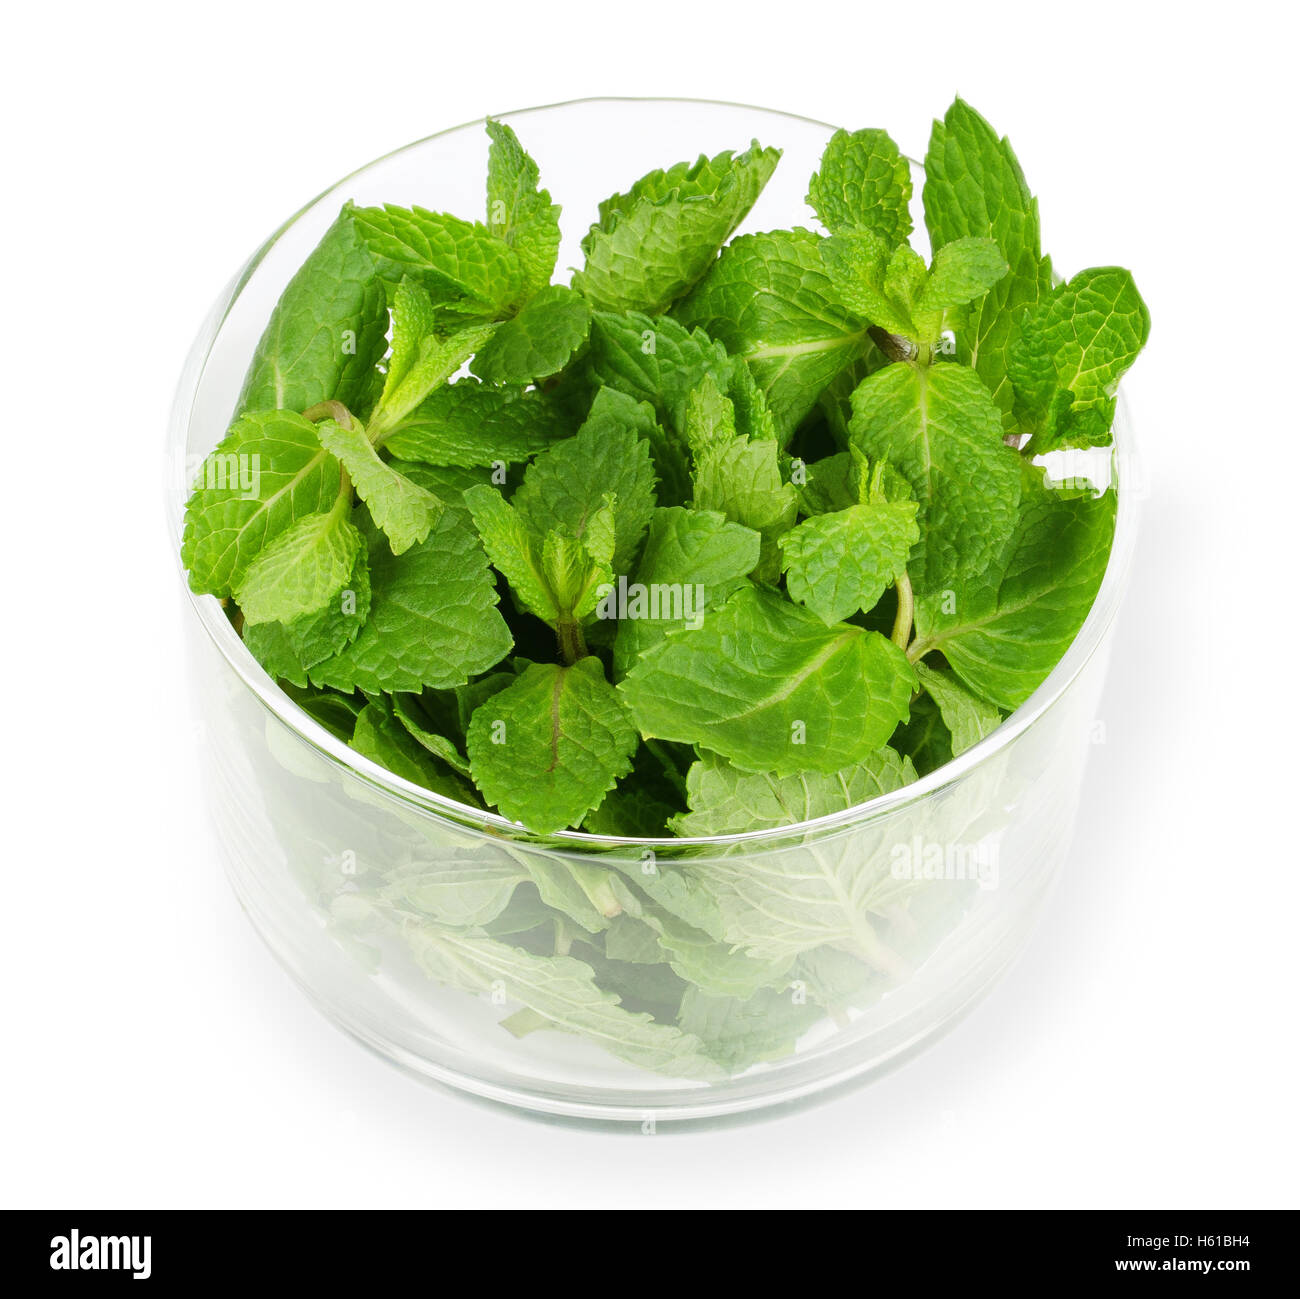 Feuilles de menthe poivrée fraîche dans un bol de verre sur fond blanc. Mentha piperita vert est une plante comestible. Banque D'Images